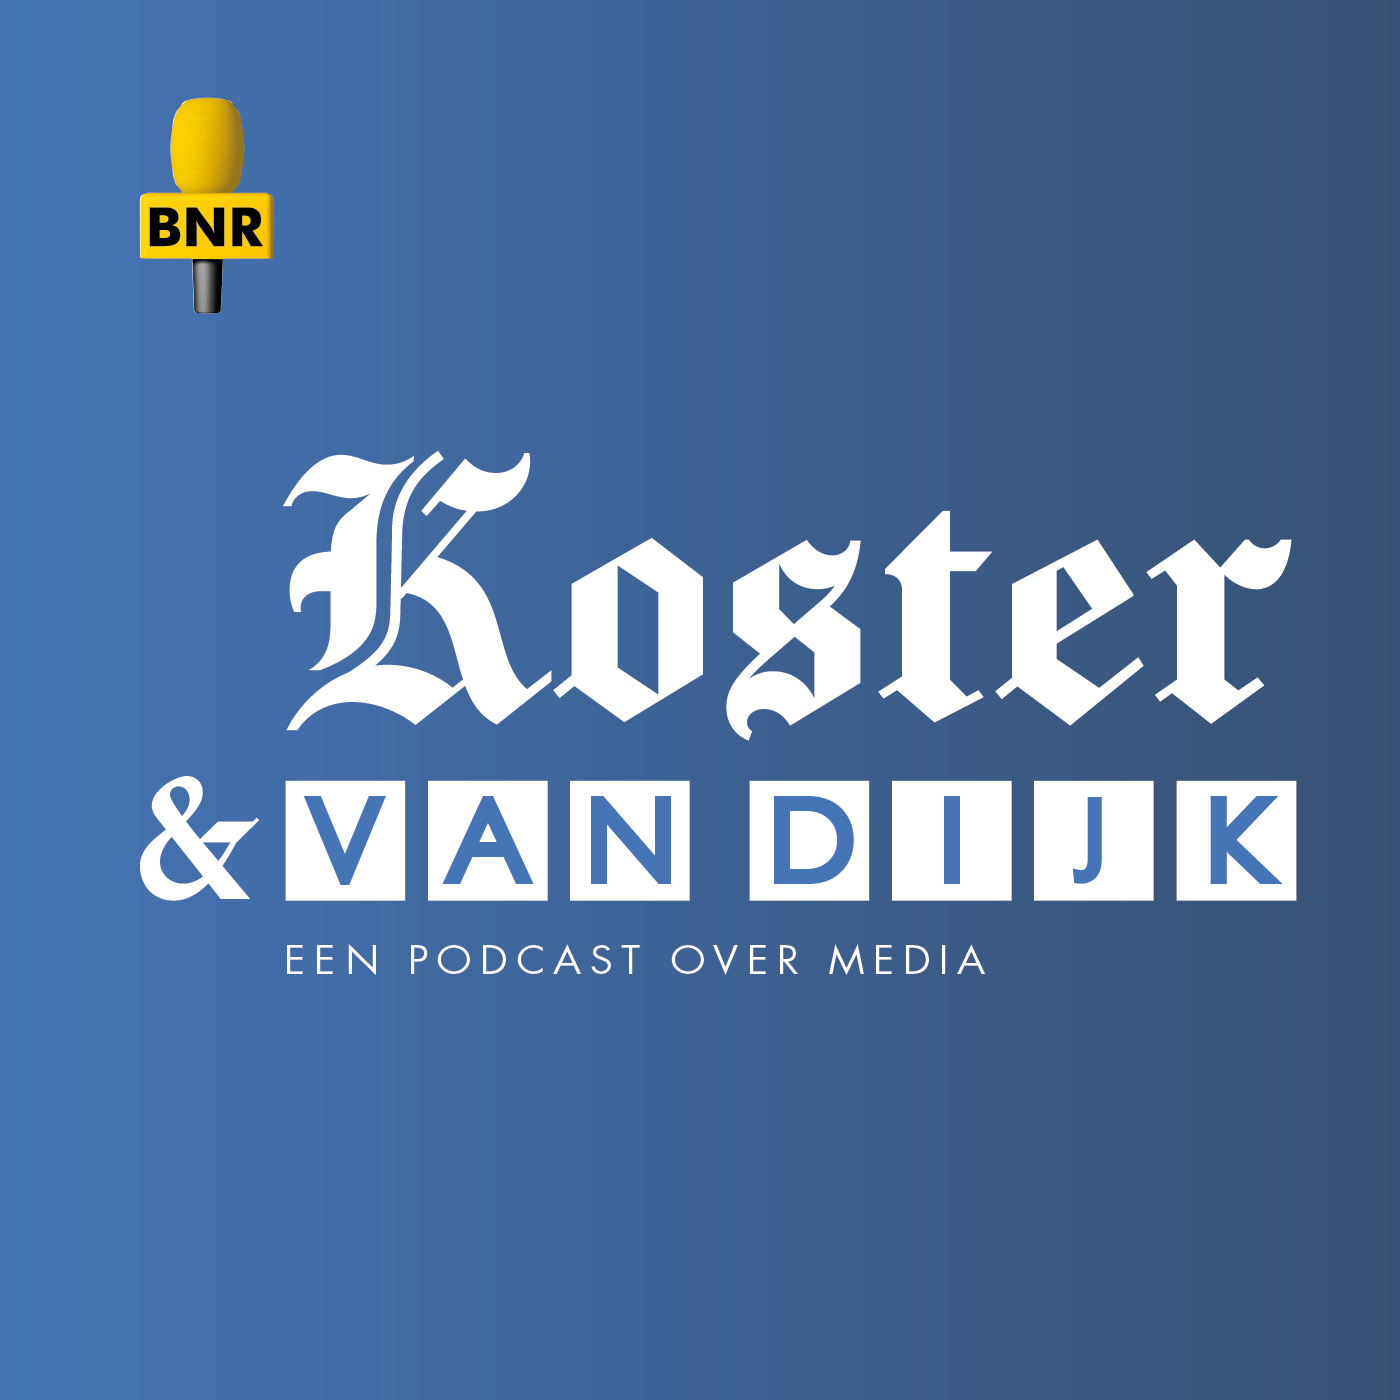 Koster & Van Dijk: NPO Klokkenluider valt in doofpot